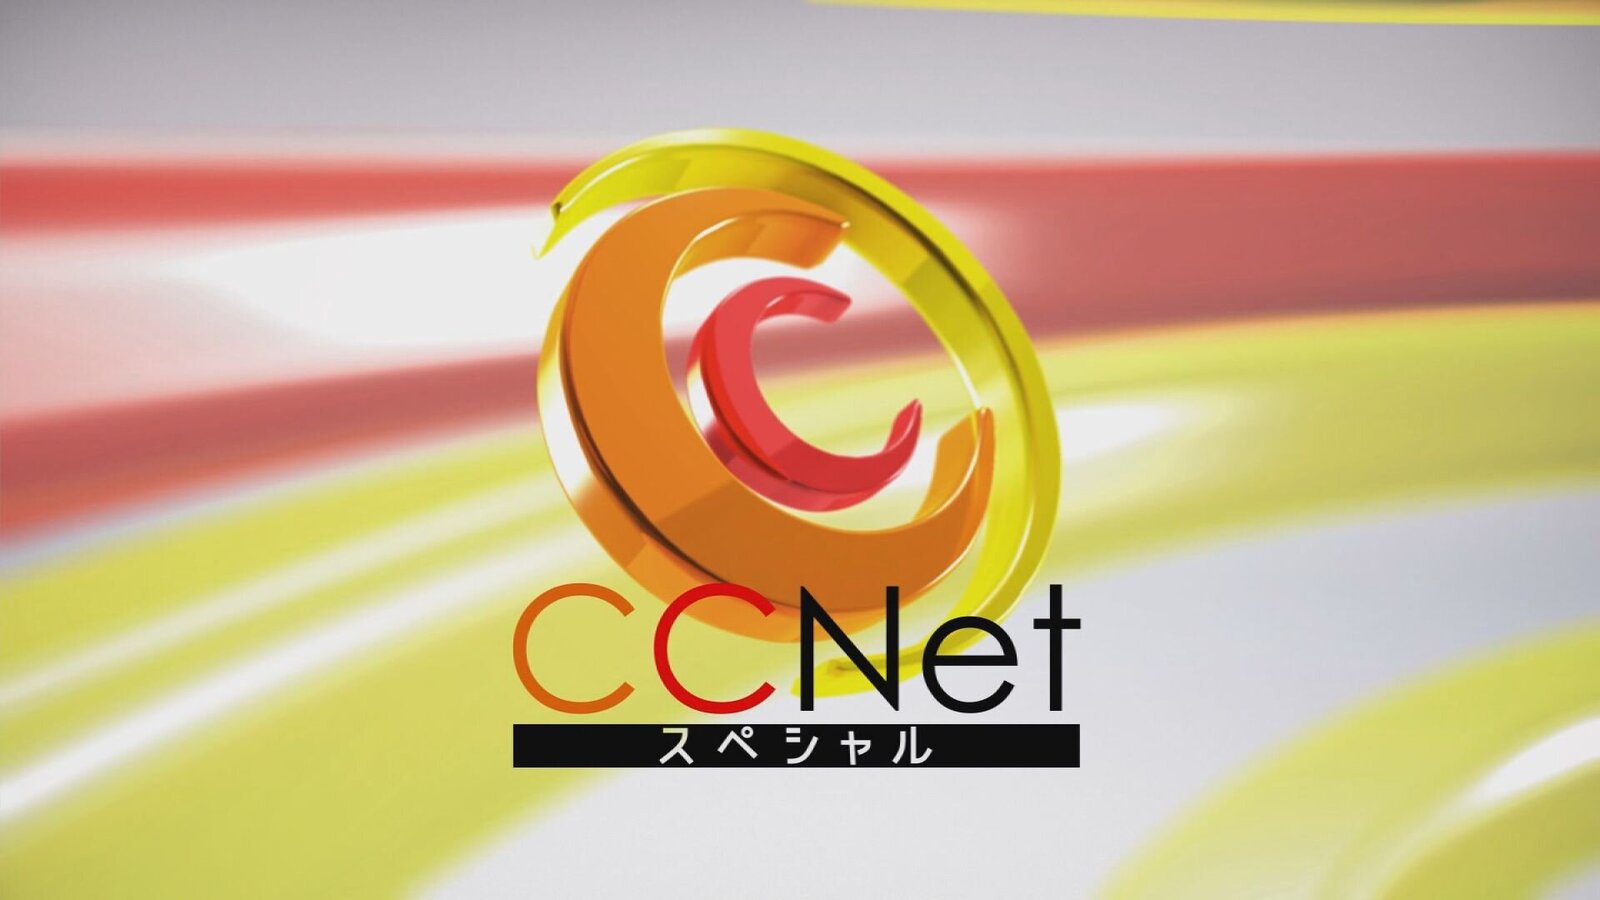 CCNetスペシャル